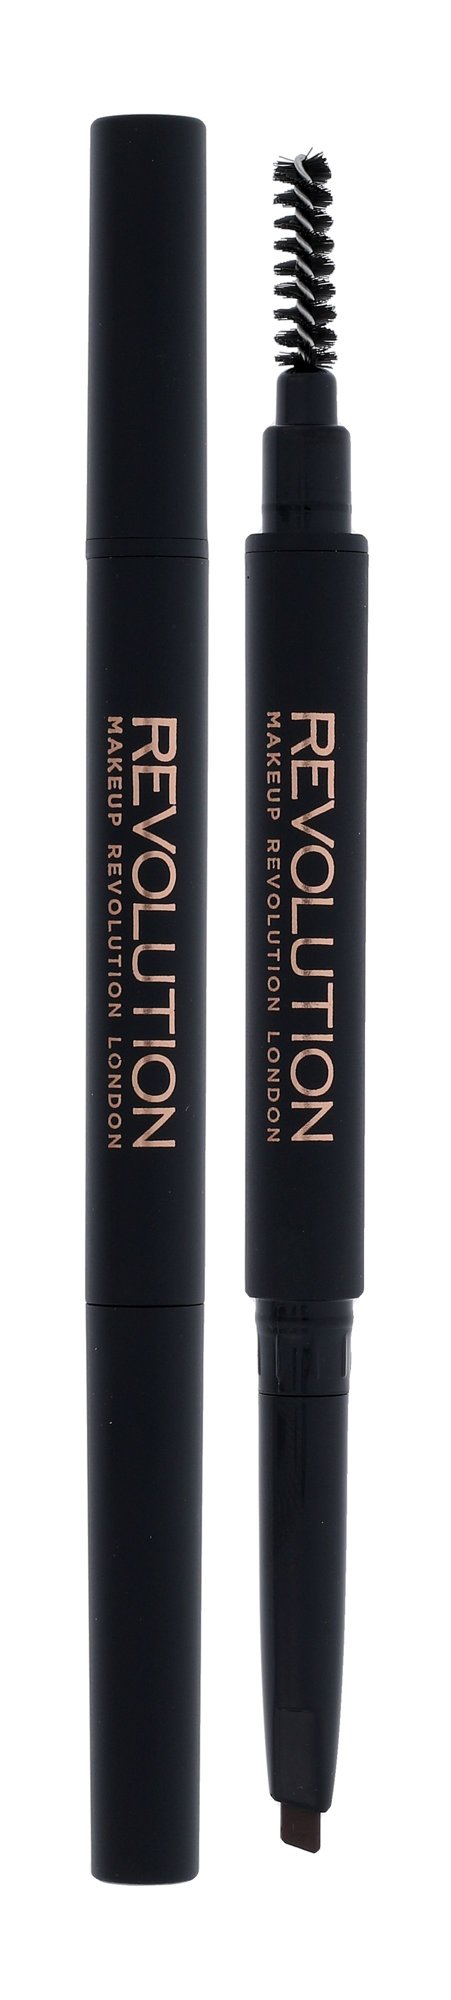 Makeup Revolution London Duo Brow Definer 0,15g antakių pieštukas